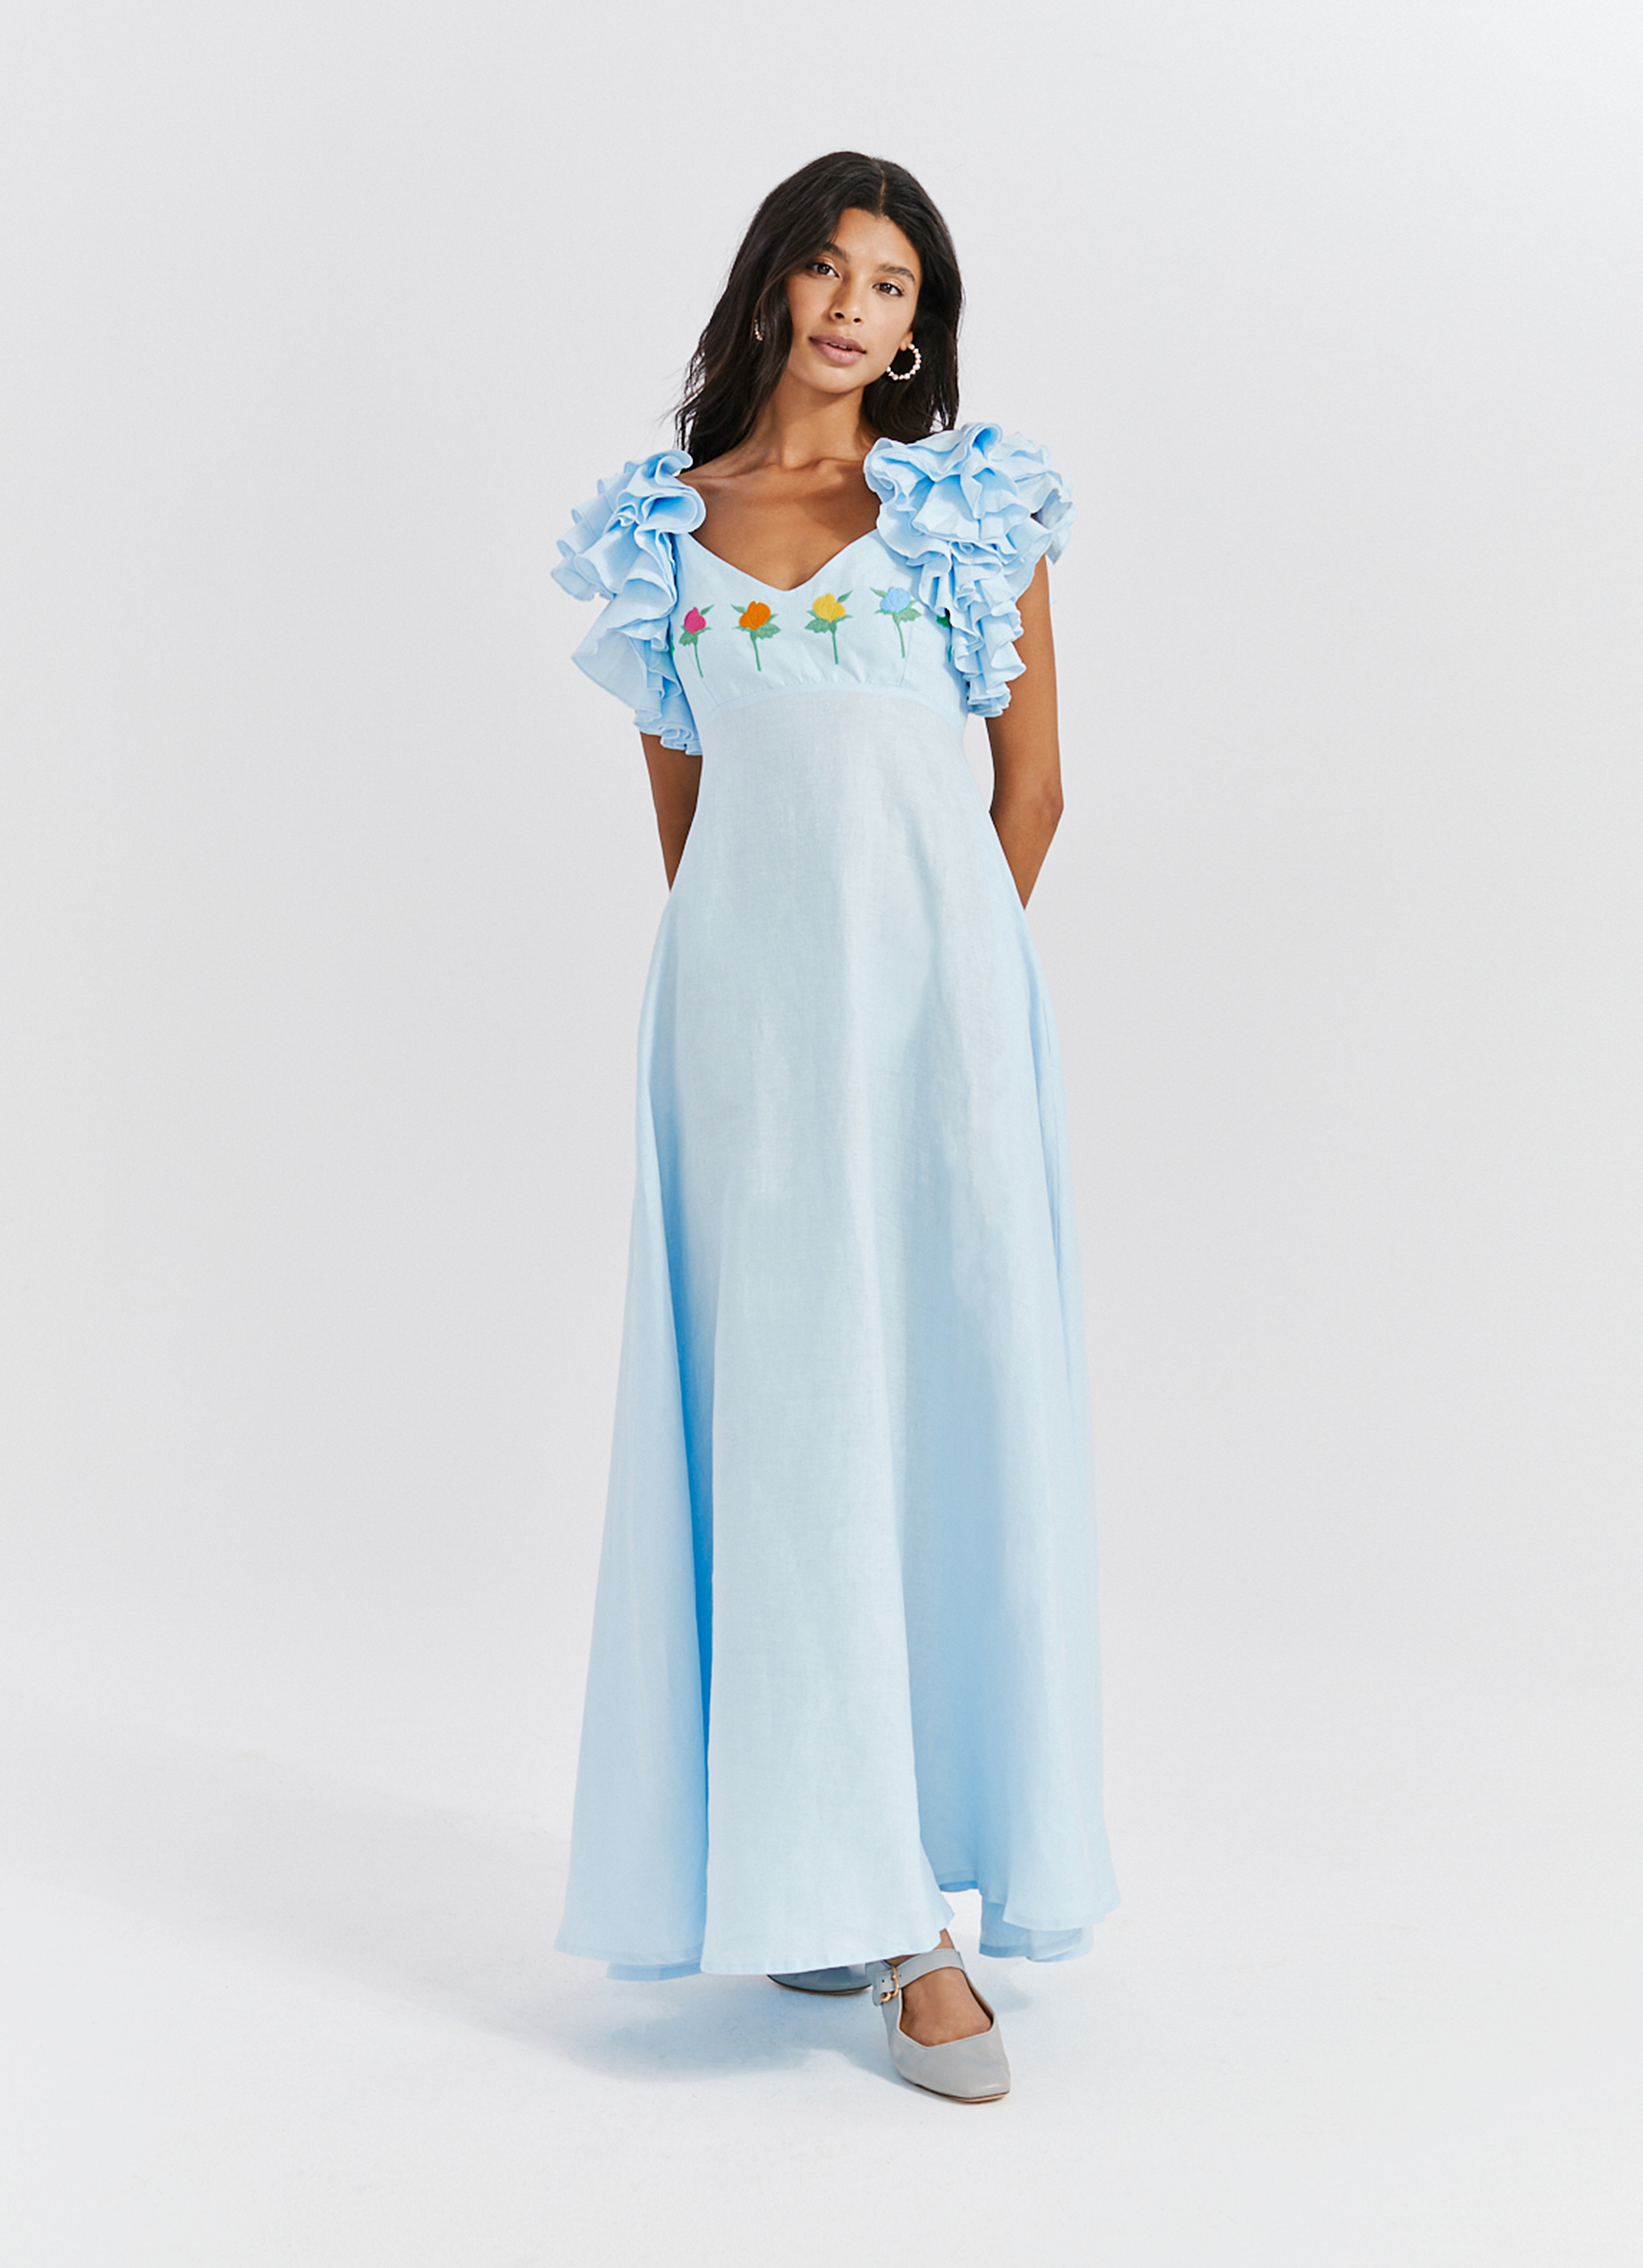 SN x Fanm Mon Dress Collaboration Women's Demre Linen Maxi Dress in light blue